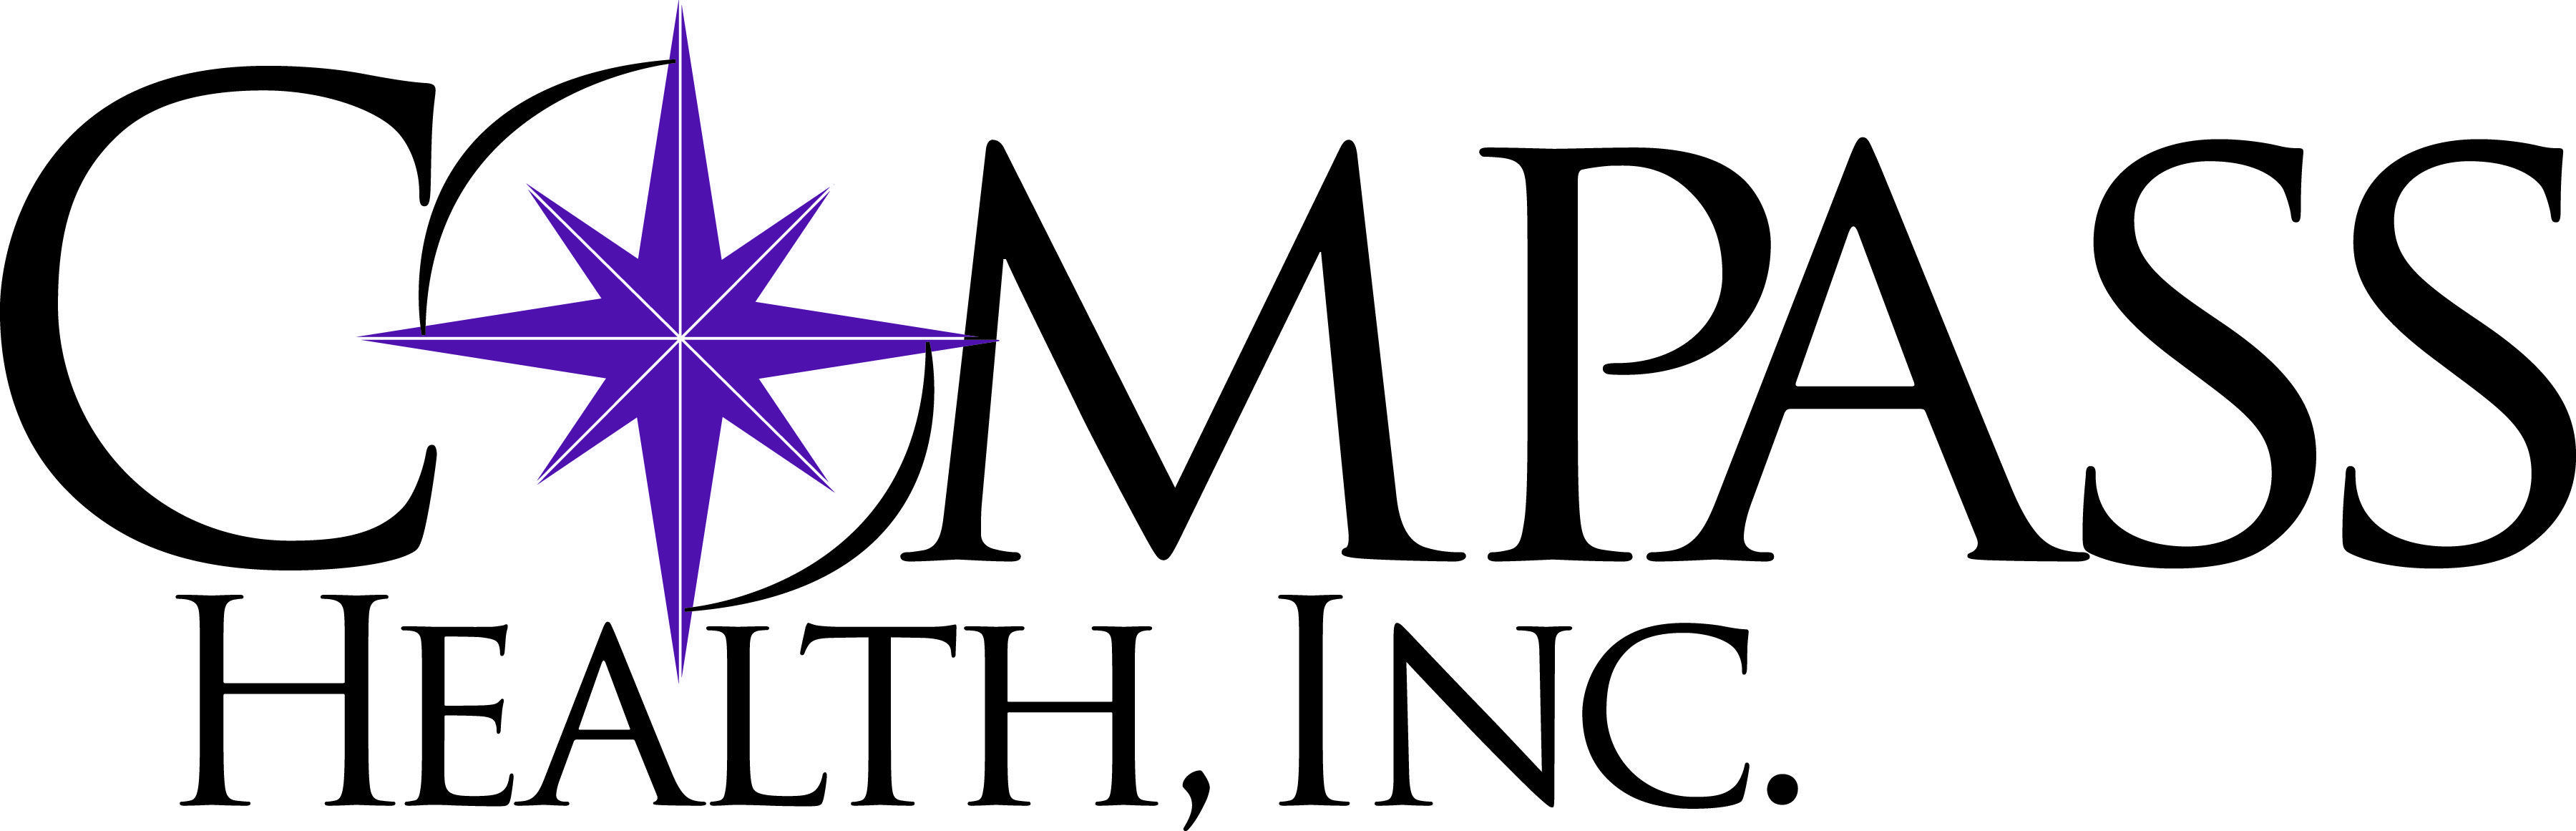 Compass Health Logo - Trade & Media – Compass Health Inc.